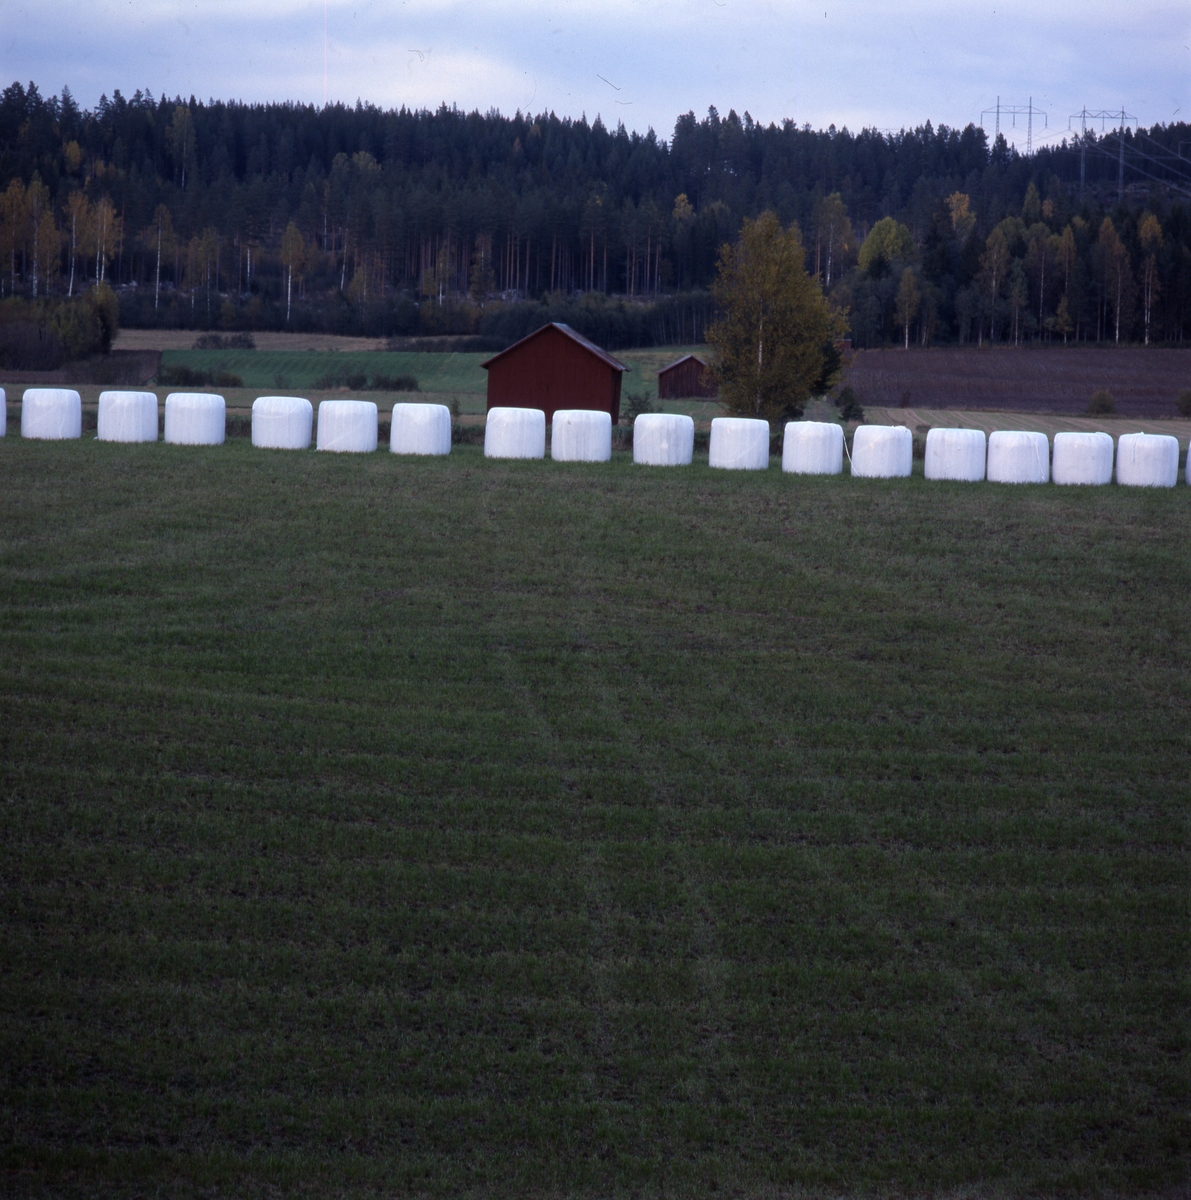 På en åker ligger en rad med ensilagebalar i vit plast ,"bonnägg", med skog och röda lador i bakgrunden, Överbo oktober 2001.